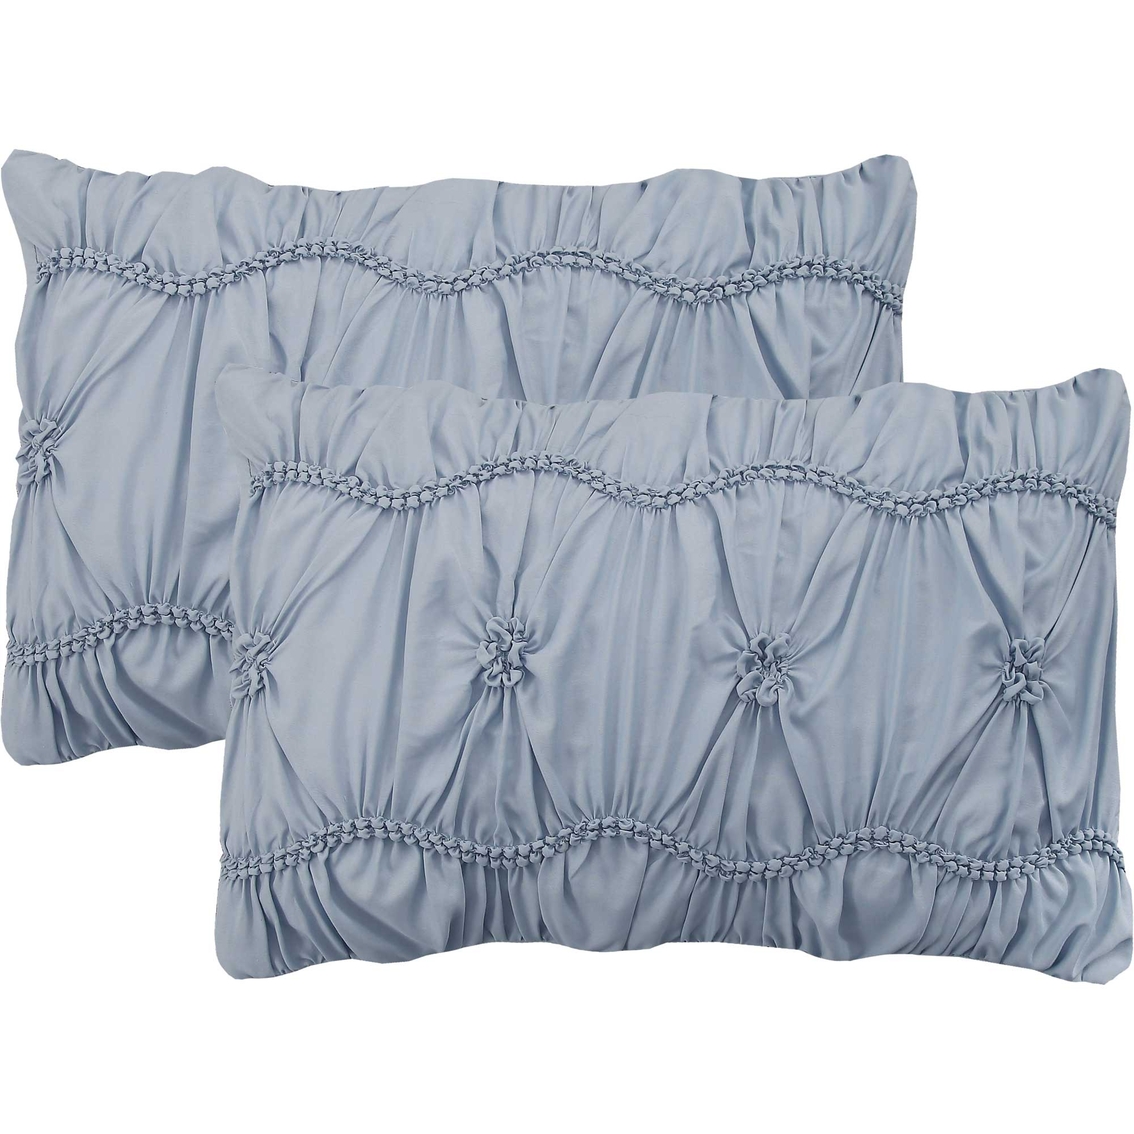 Modern Threads Clara Embellished Comforter Set - Image 5 of 6